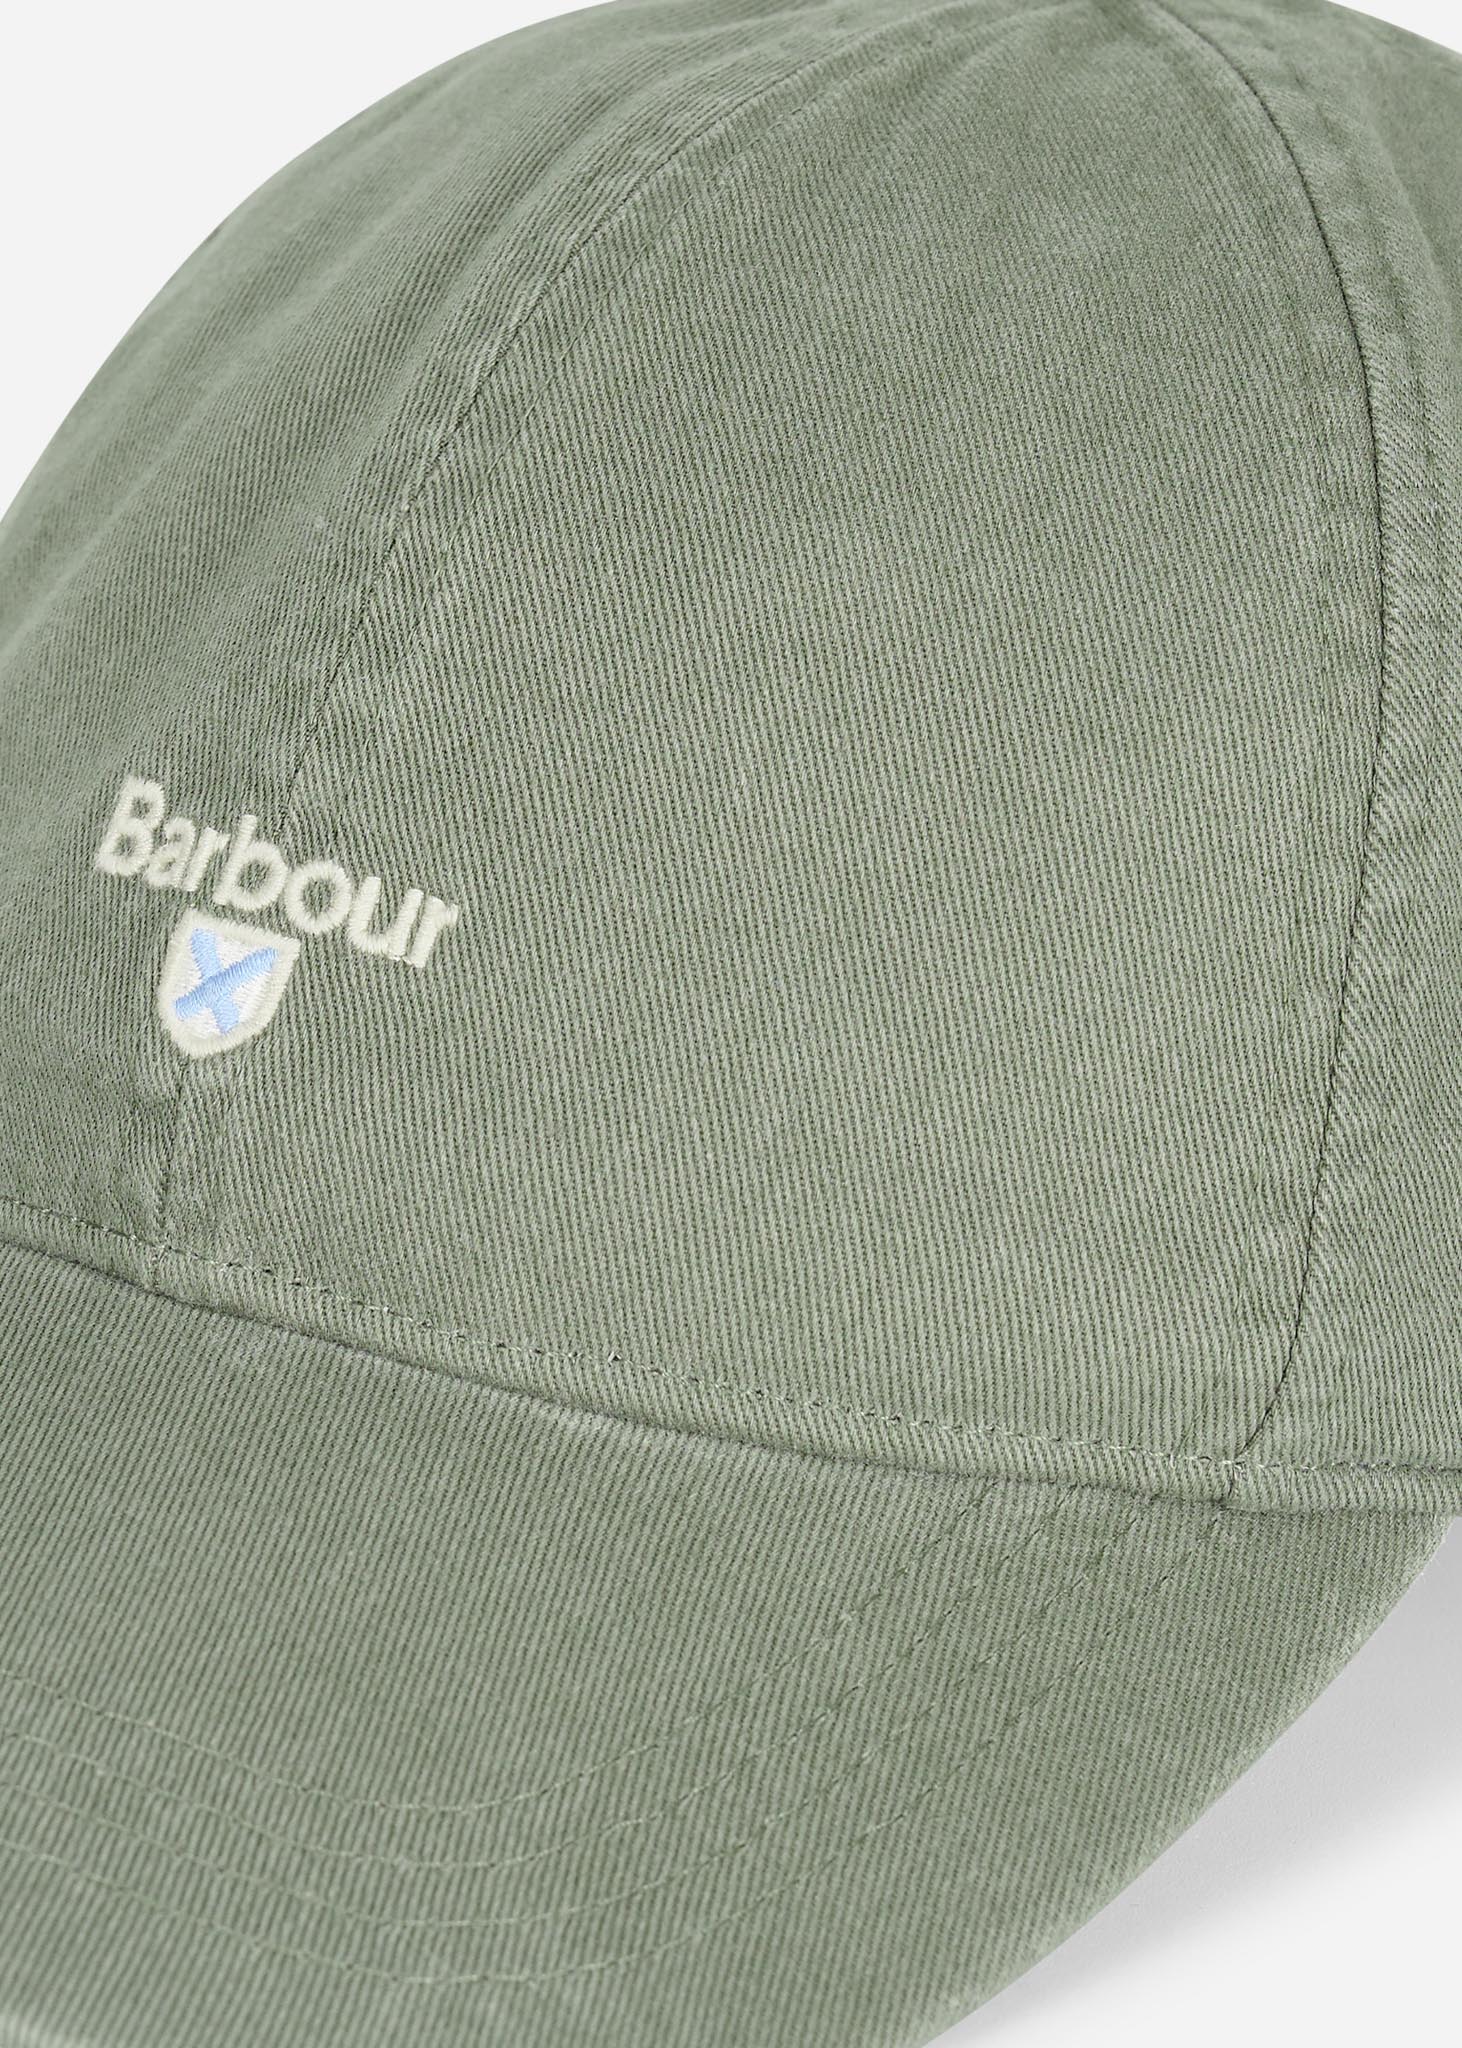 Barbour Petten  Cascade sports cap - agave green 